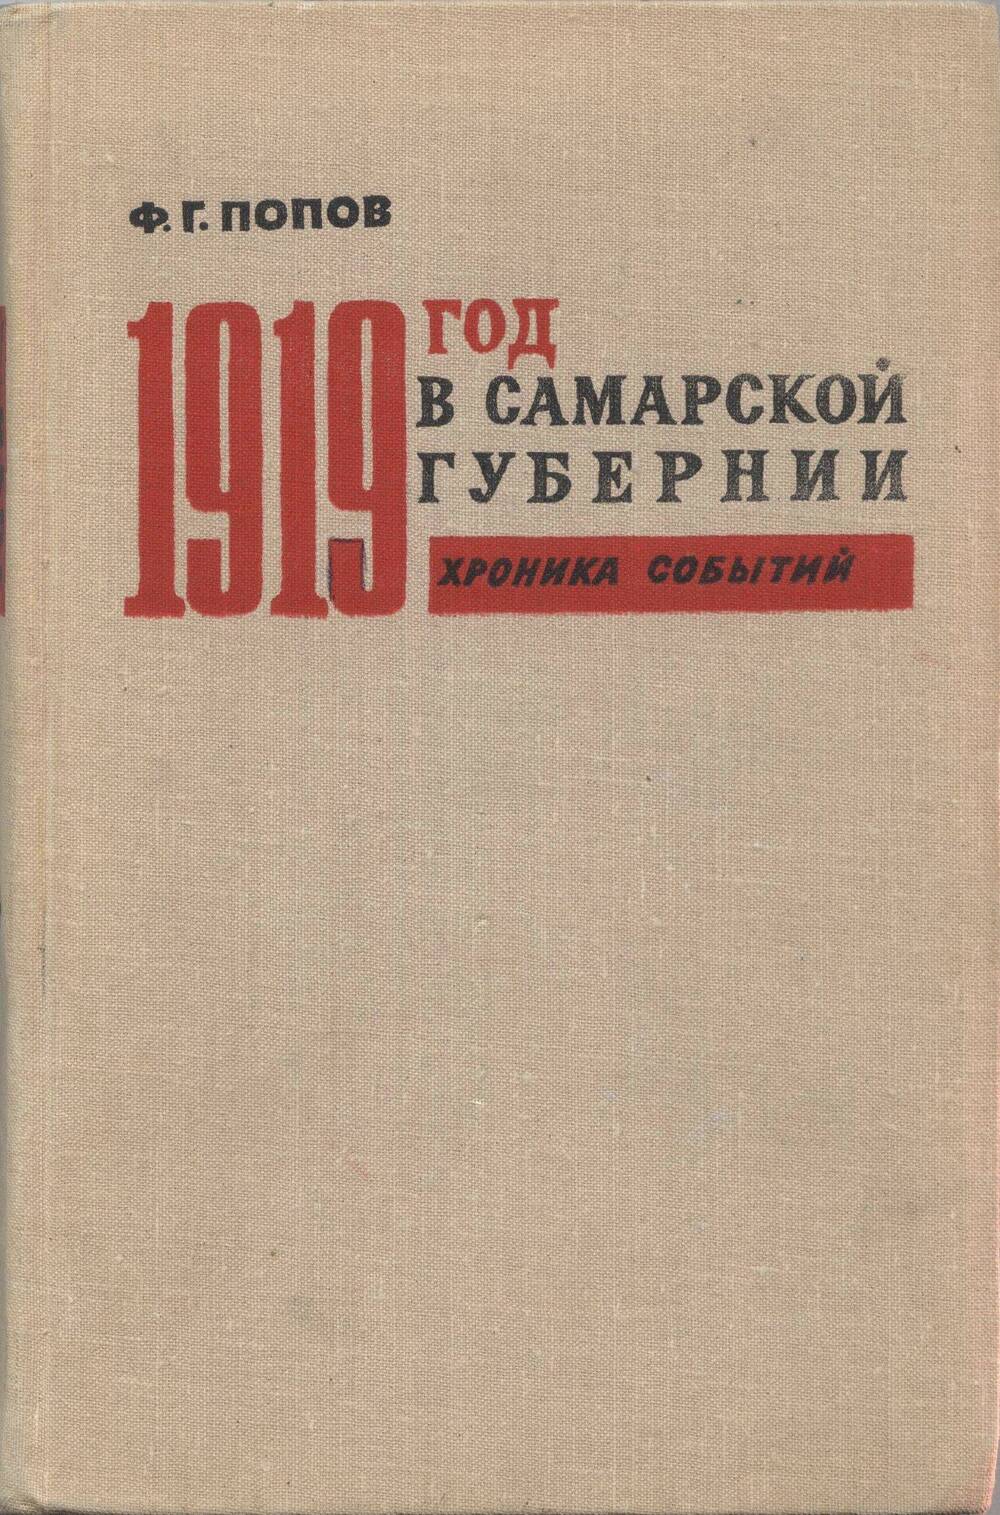 Книга. 1919 год в Самарской губернии. Хроника событий.